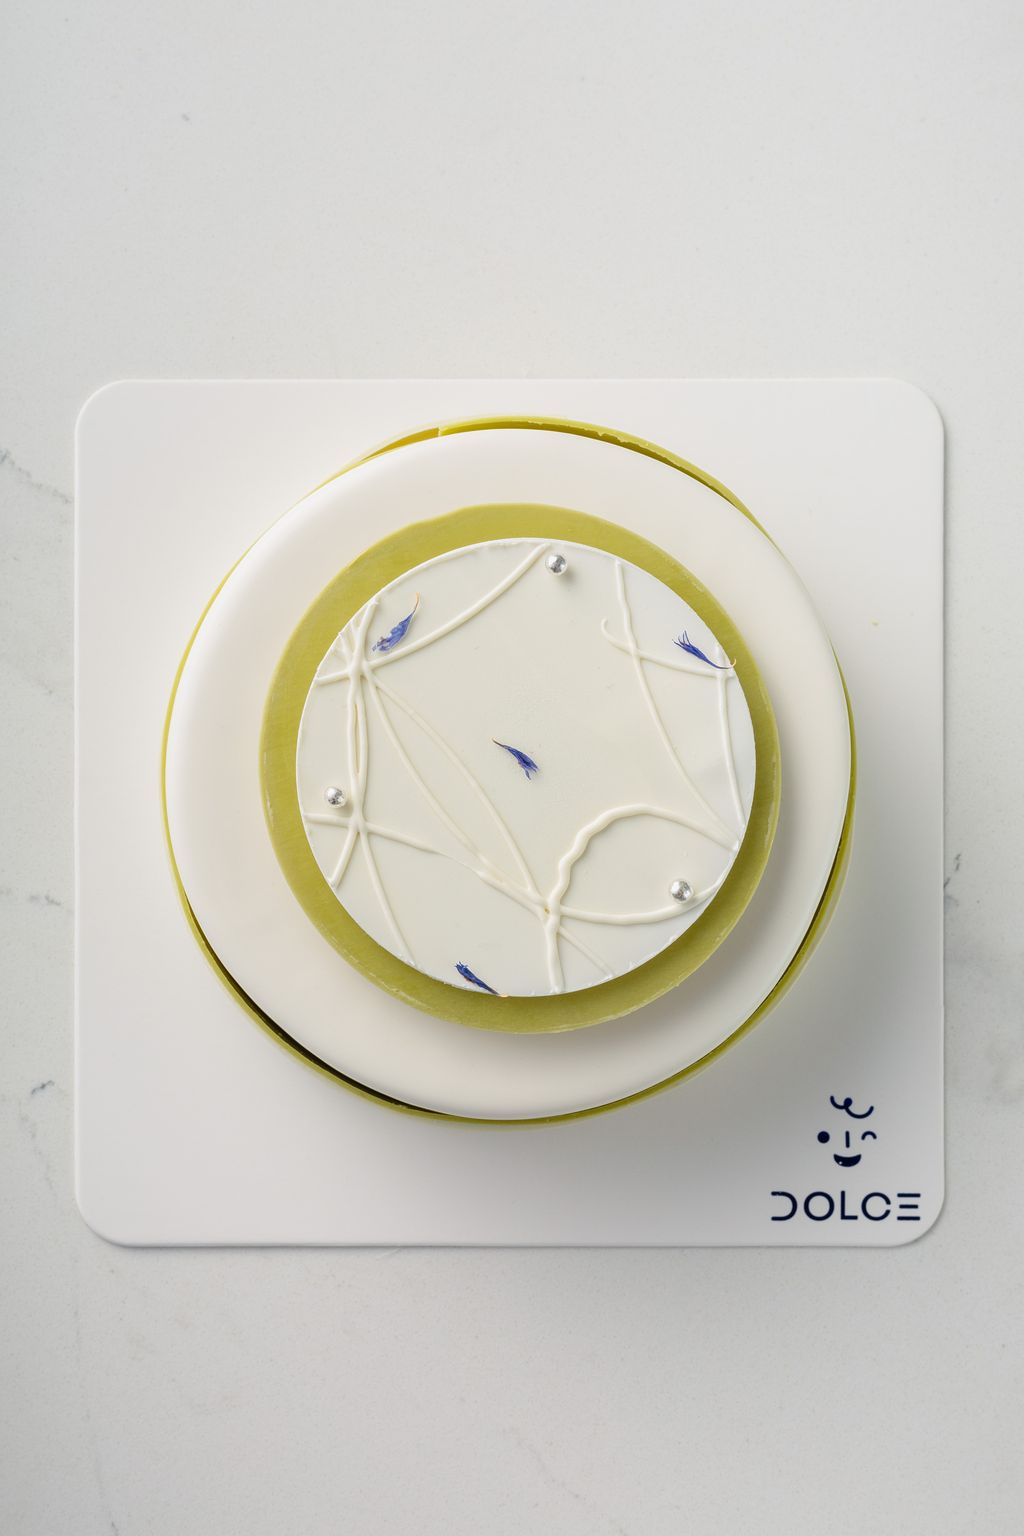 Dolce_Whole Cake-3